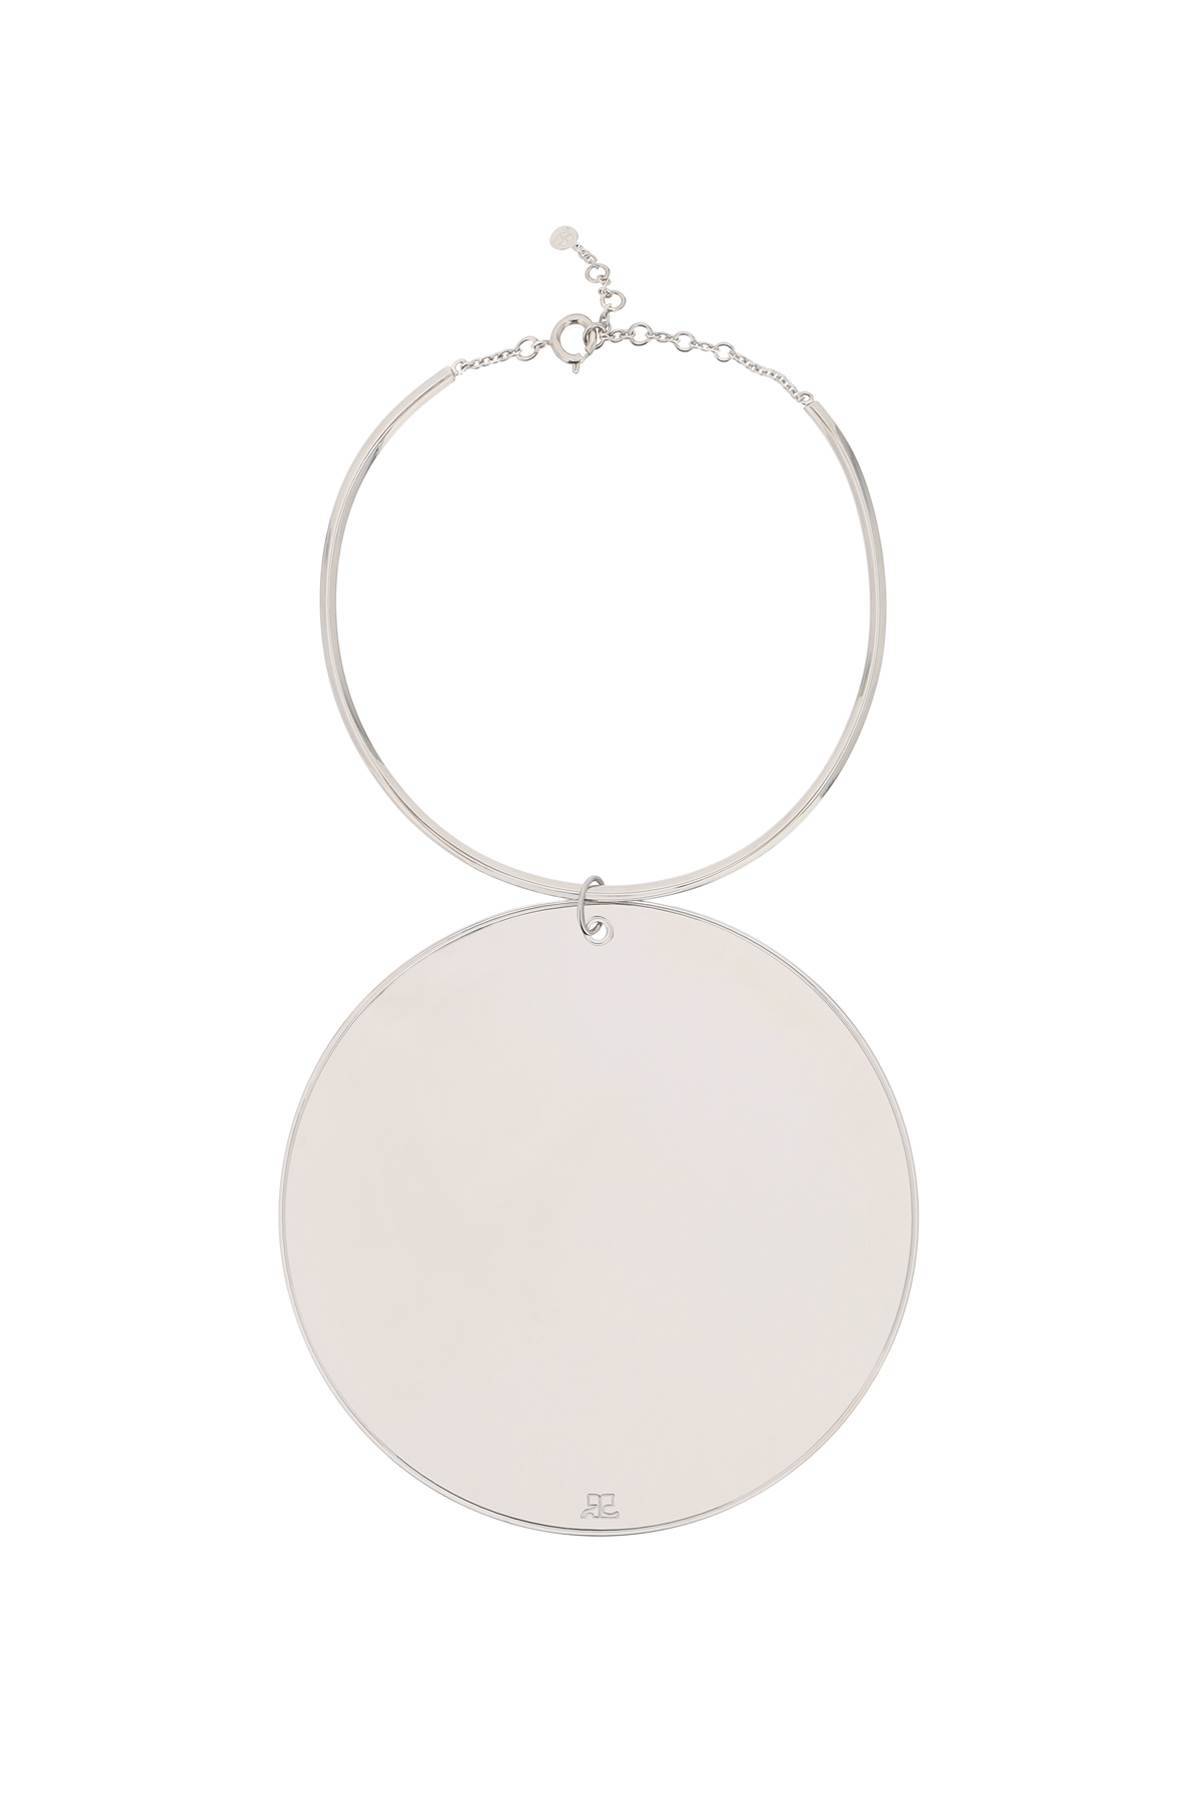 Courrèges COURREGES mirror charm necklace